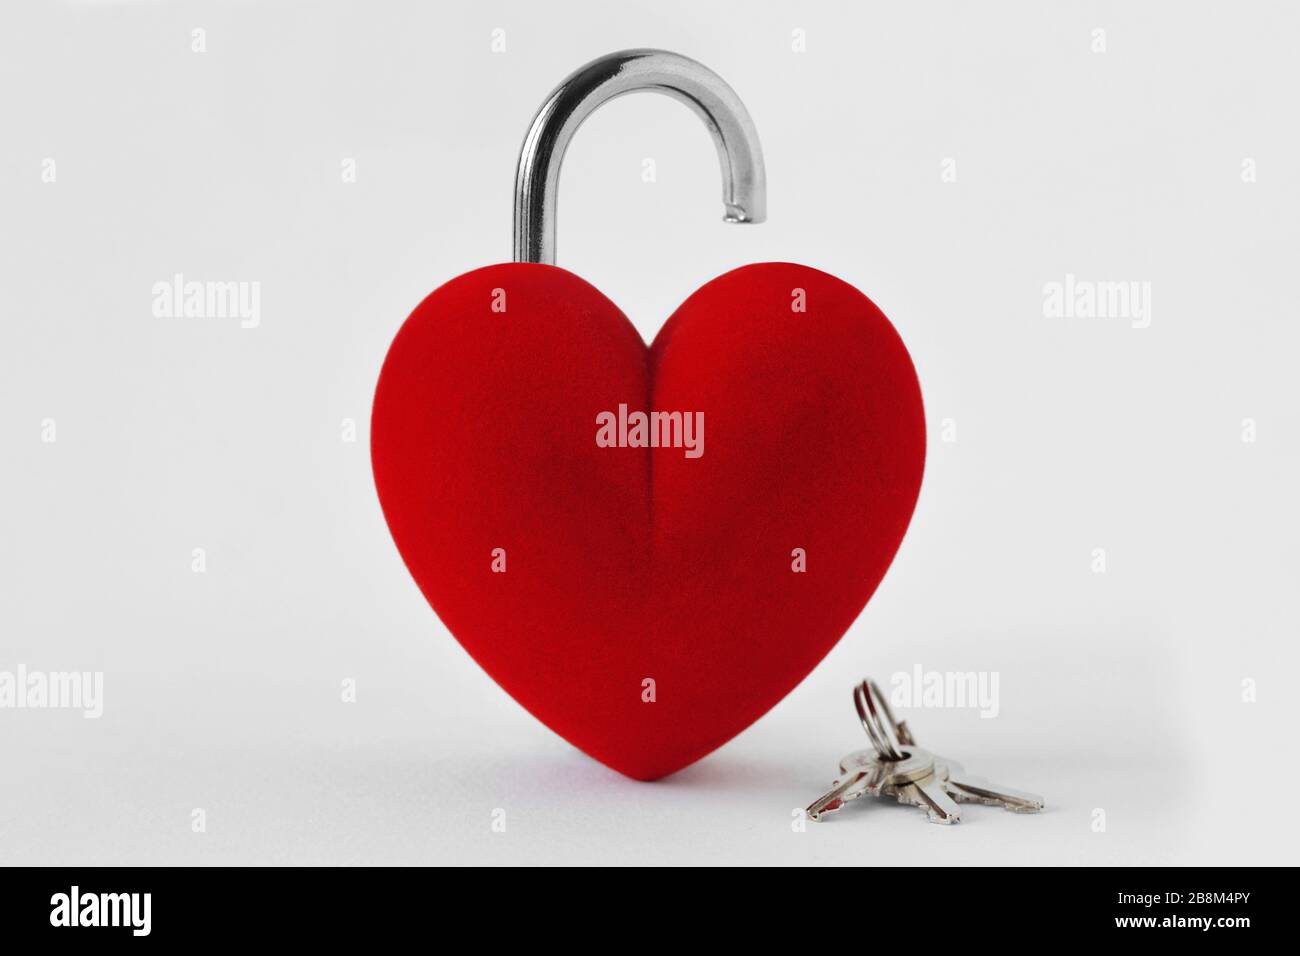 Offenes, herzförmiges Vorhängeschloss mit Schlüsseln auf weißem Hintergrund - Liebeskonzept Stockfoto